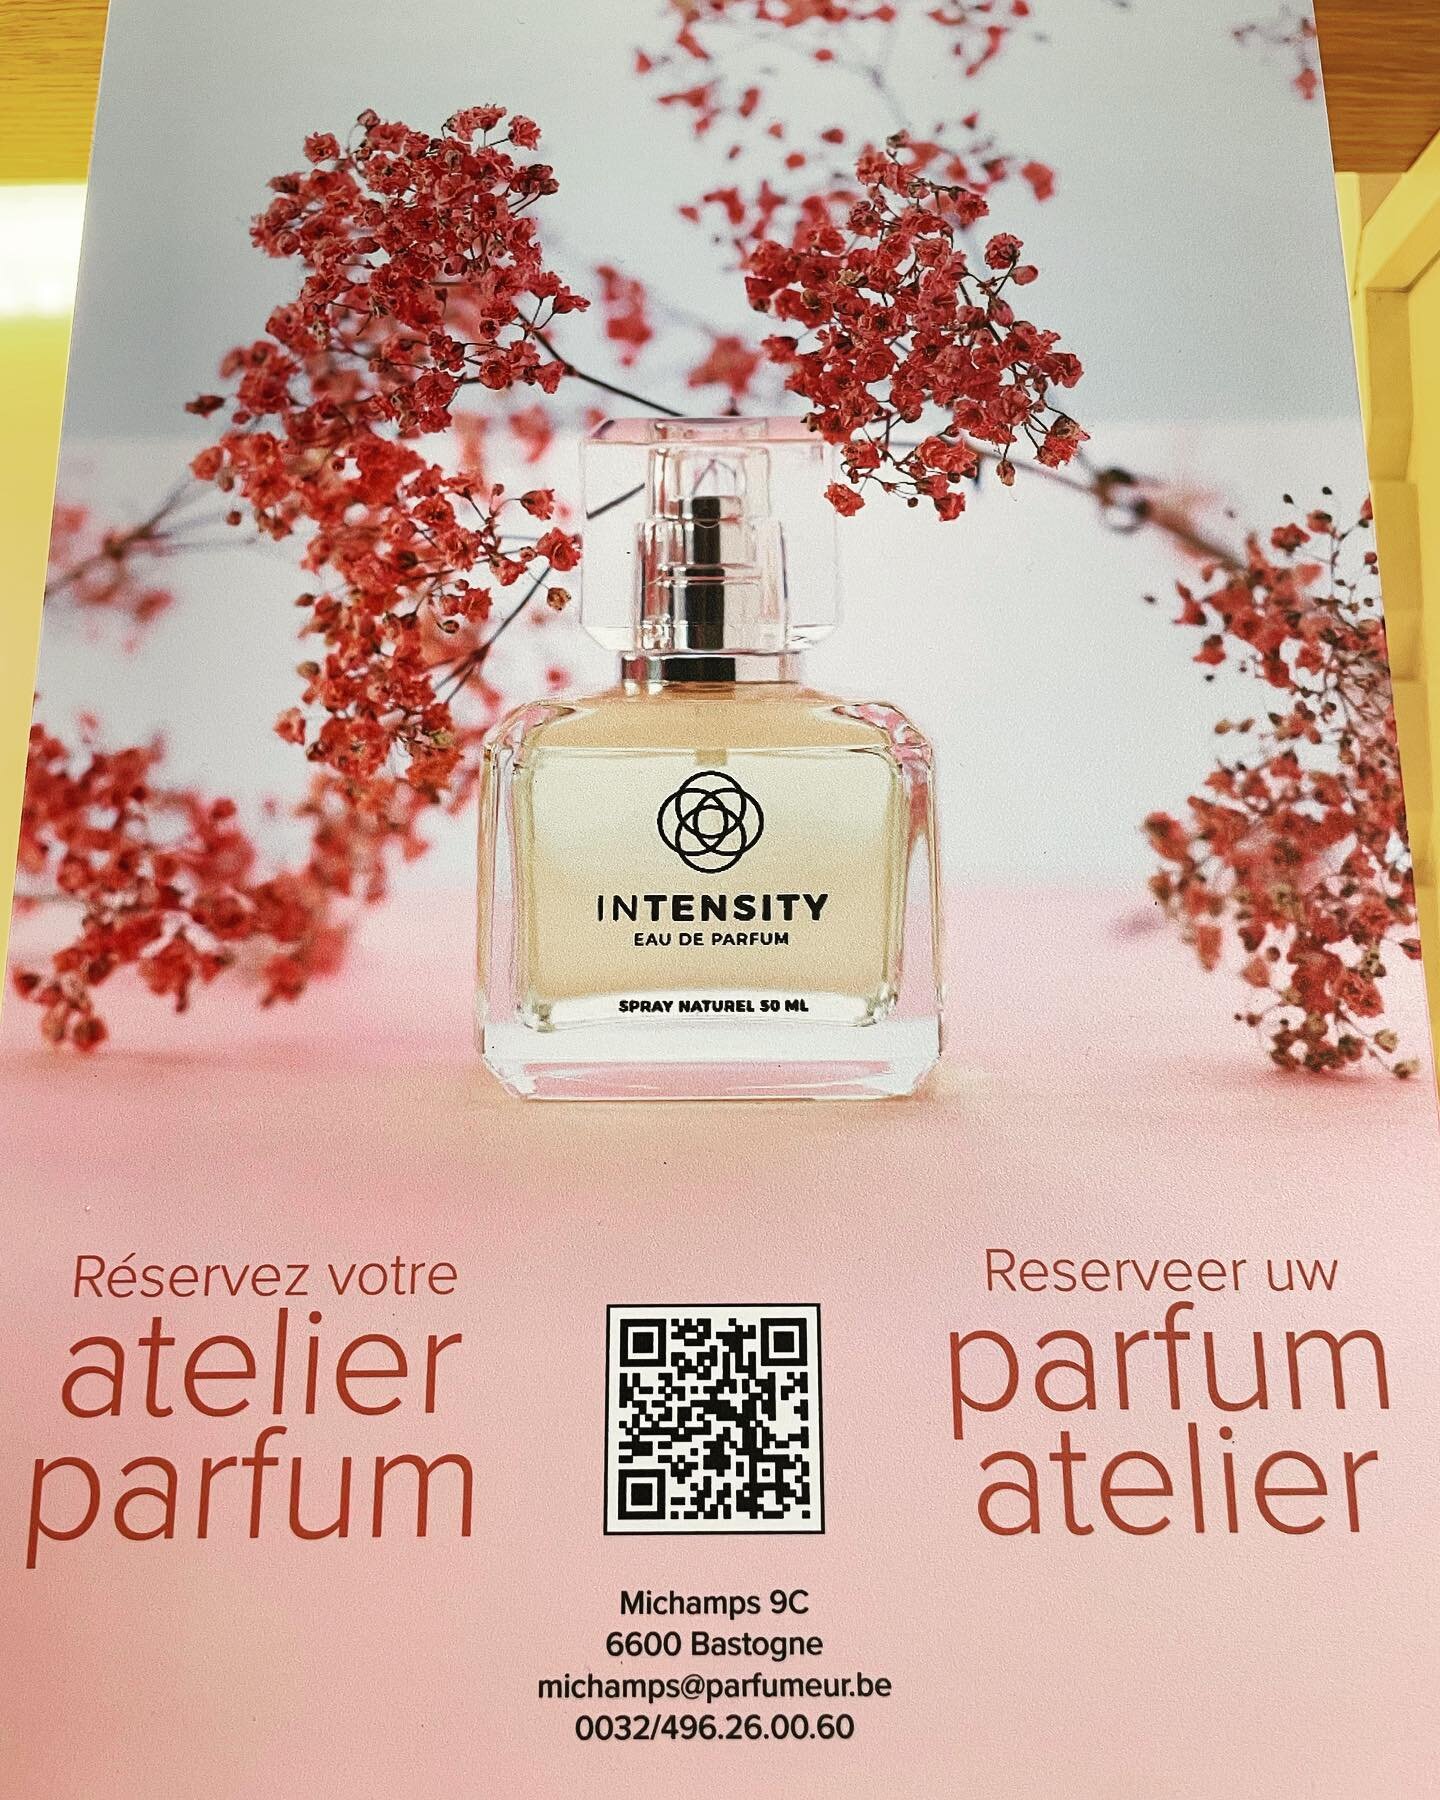 🌸🌸 R&eacute;servez votre atelier parfum &agrave; Michamps/Bastogne 🌸🌸

#atelier #parfum #bastogne #michamps #🧡